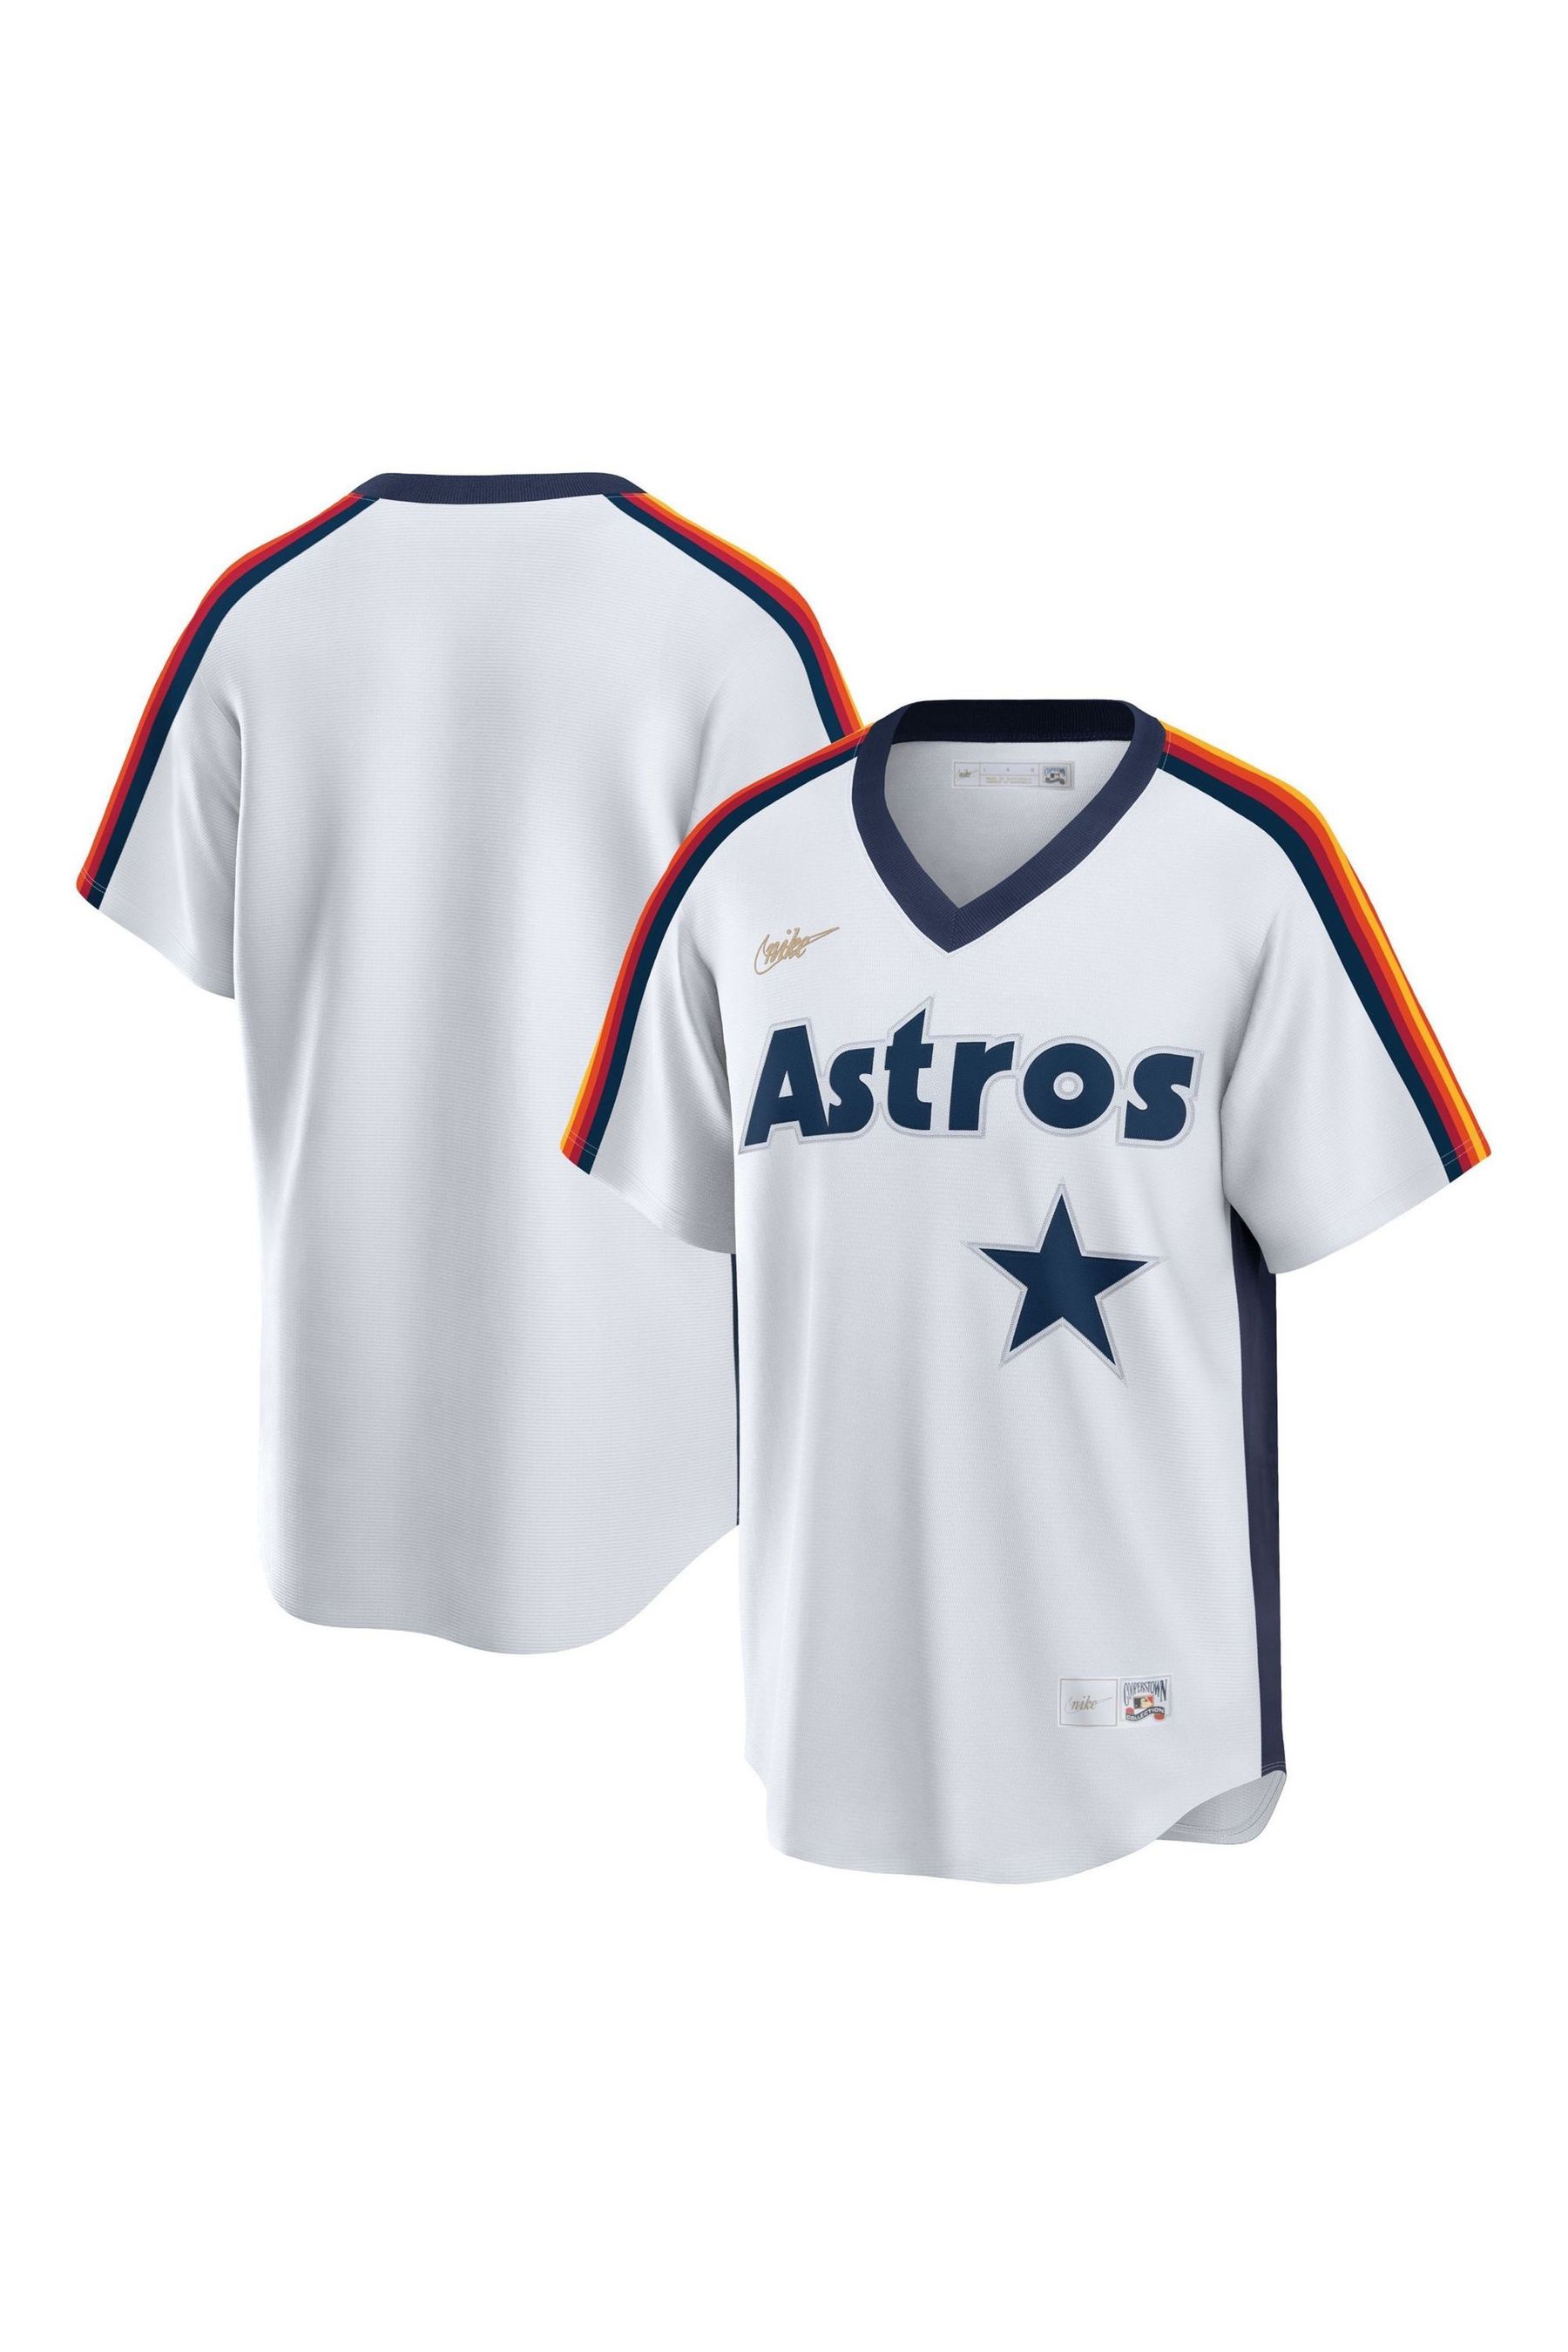 Купить официальную футболку. Футболка Хьюстон Астрос. Houston Astros футболка.